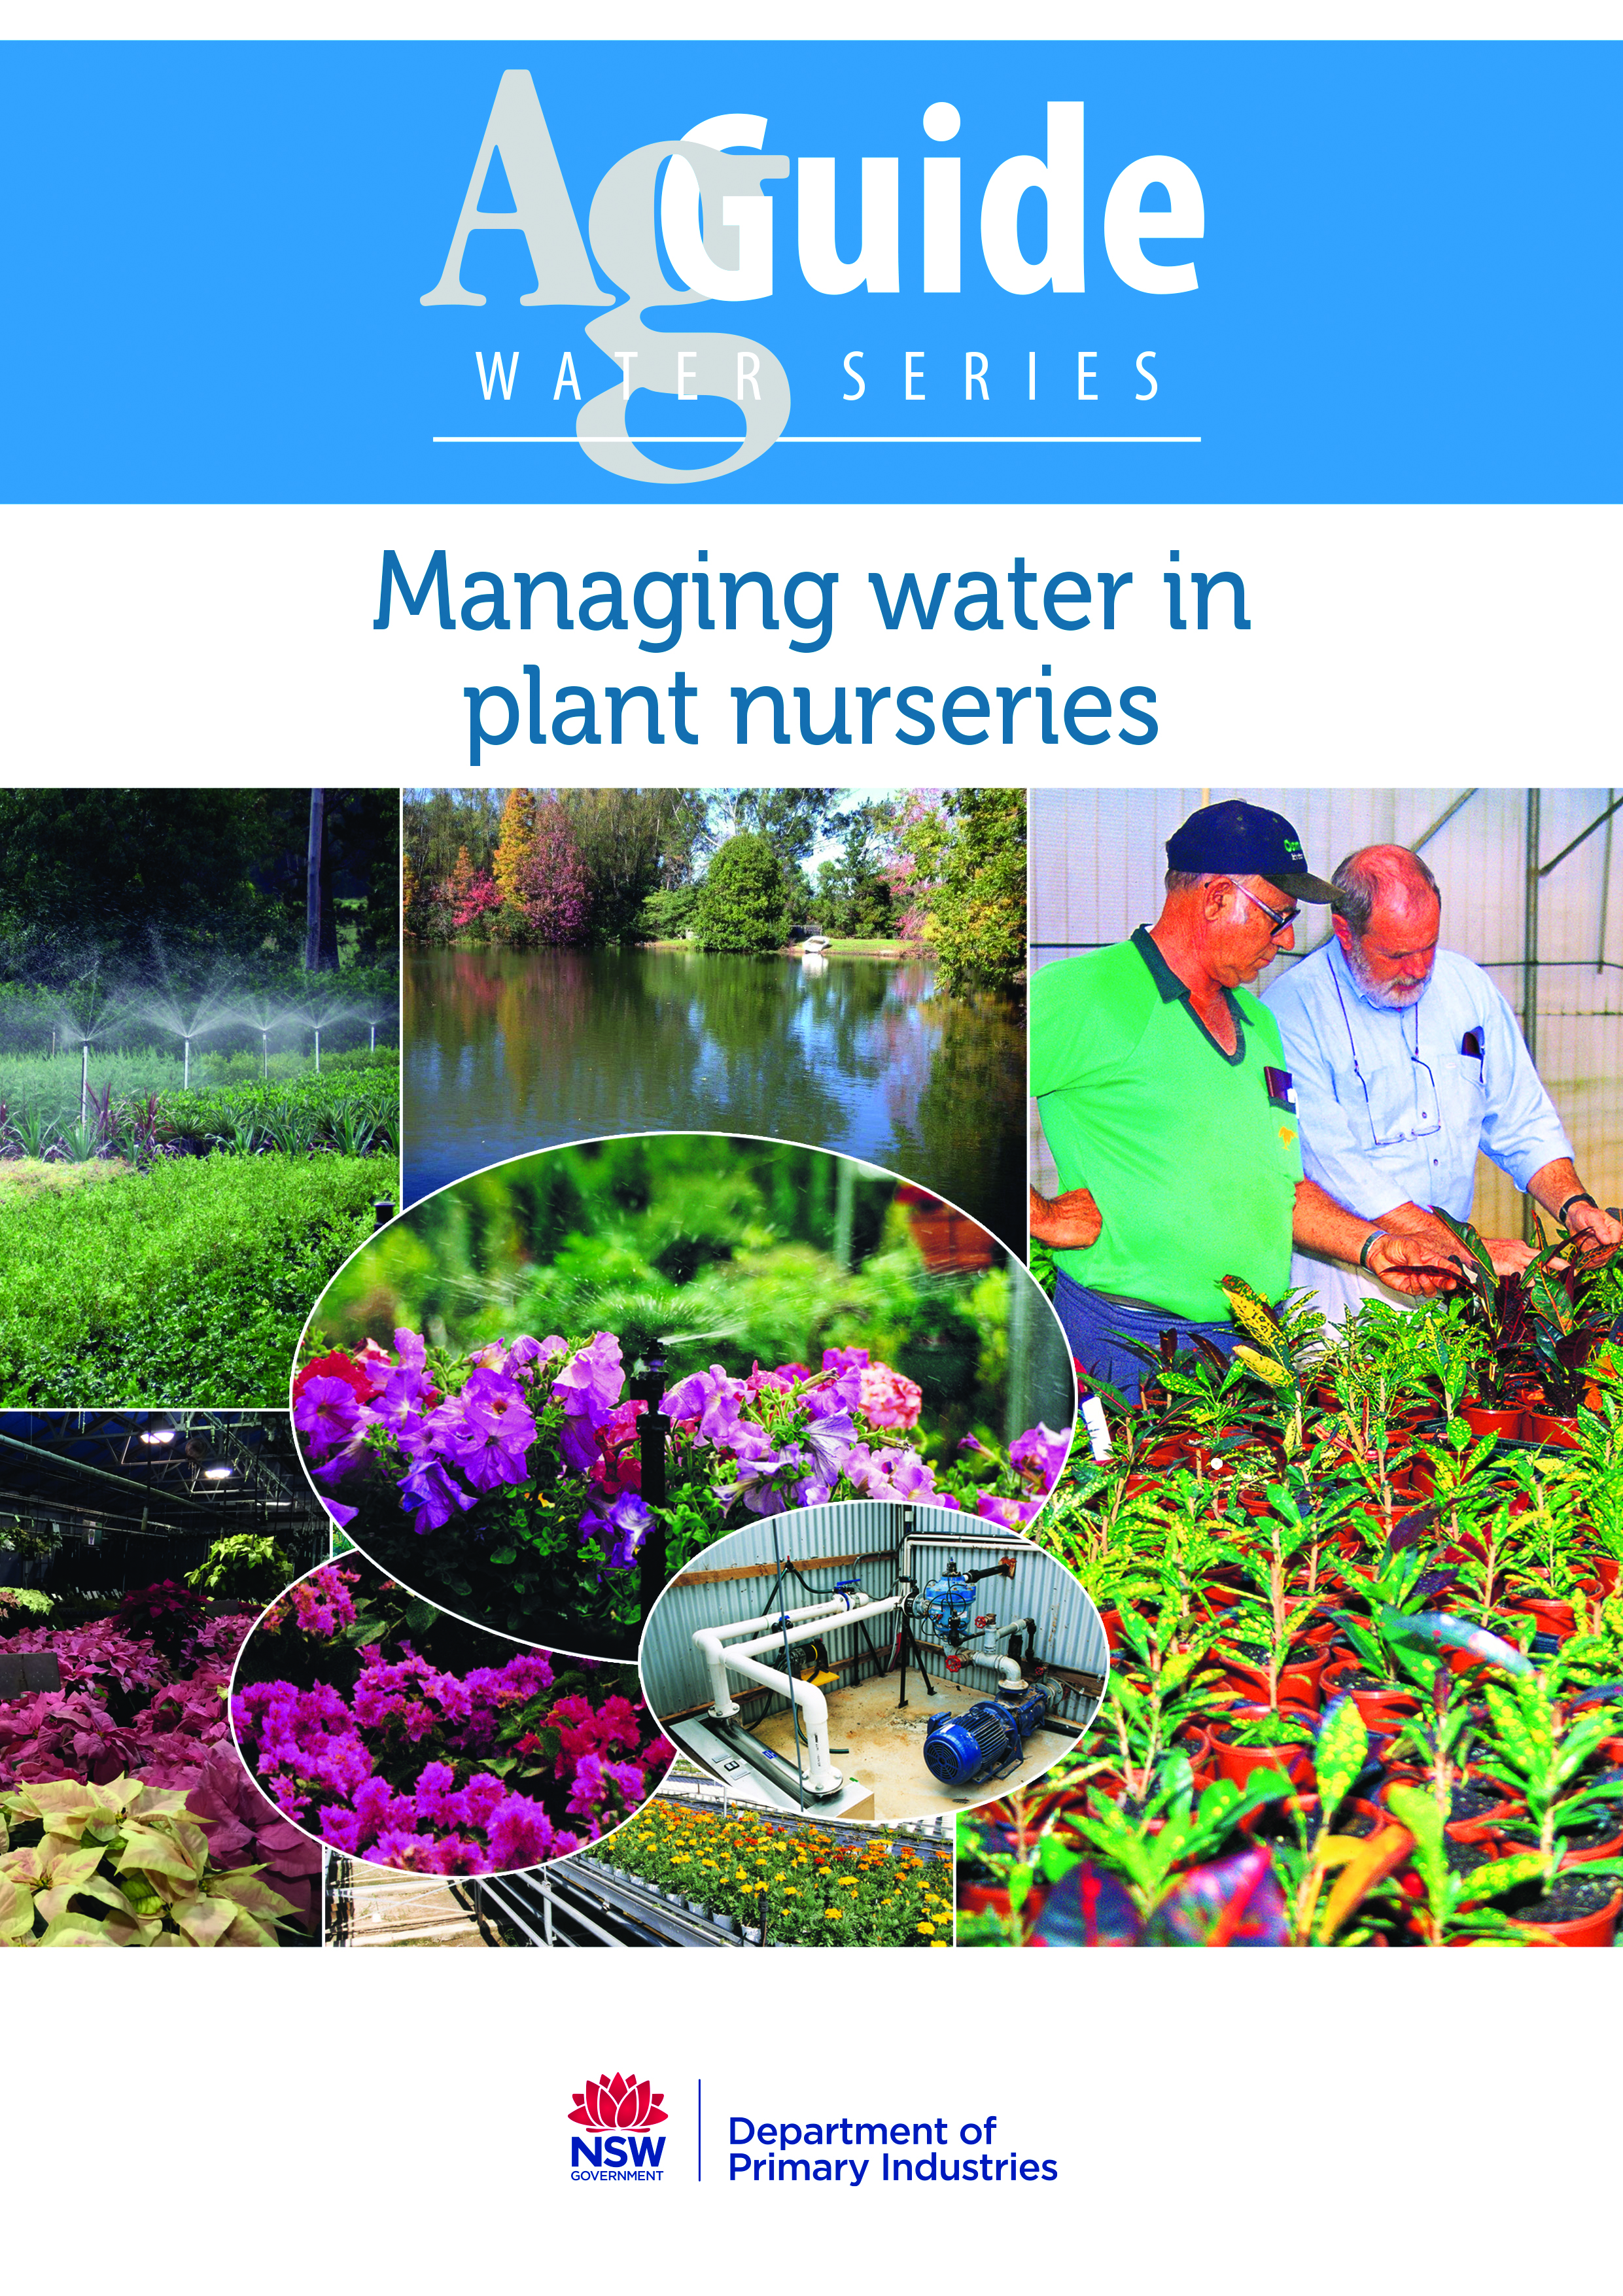 Managing water in plant nurseries